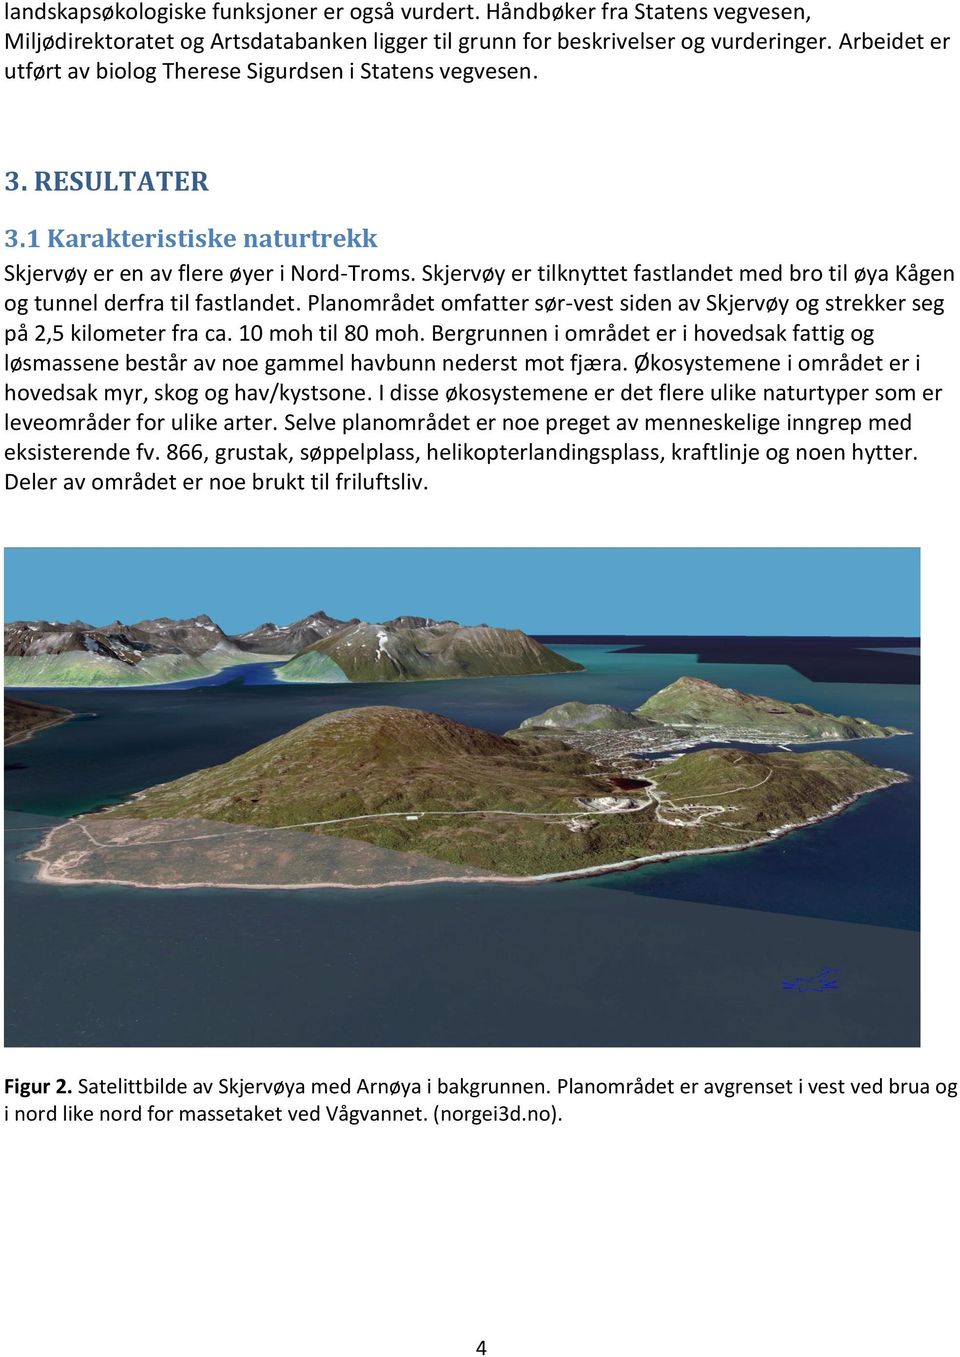 Skjervøy er tilknyttet fastlandet med bro til øya Kågen og tunnel derfra til fastlandet. Planområdet omfatter sør-vest siden av Skjervøy og strekker seg på 2,5 kilometer fra ca. 10 moh til 80 moh.